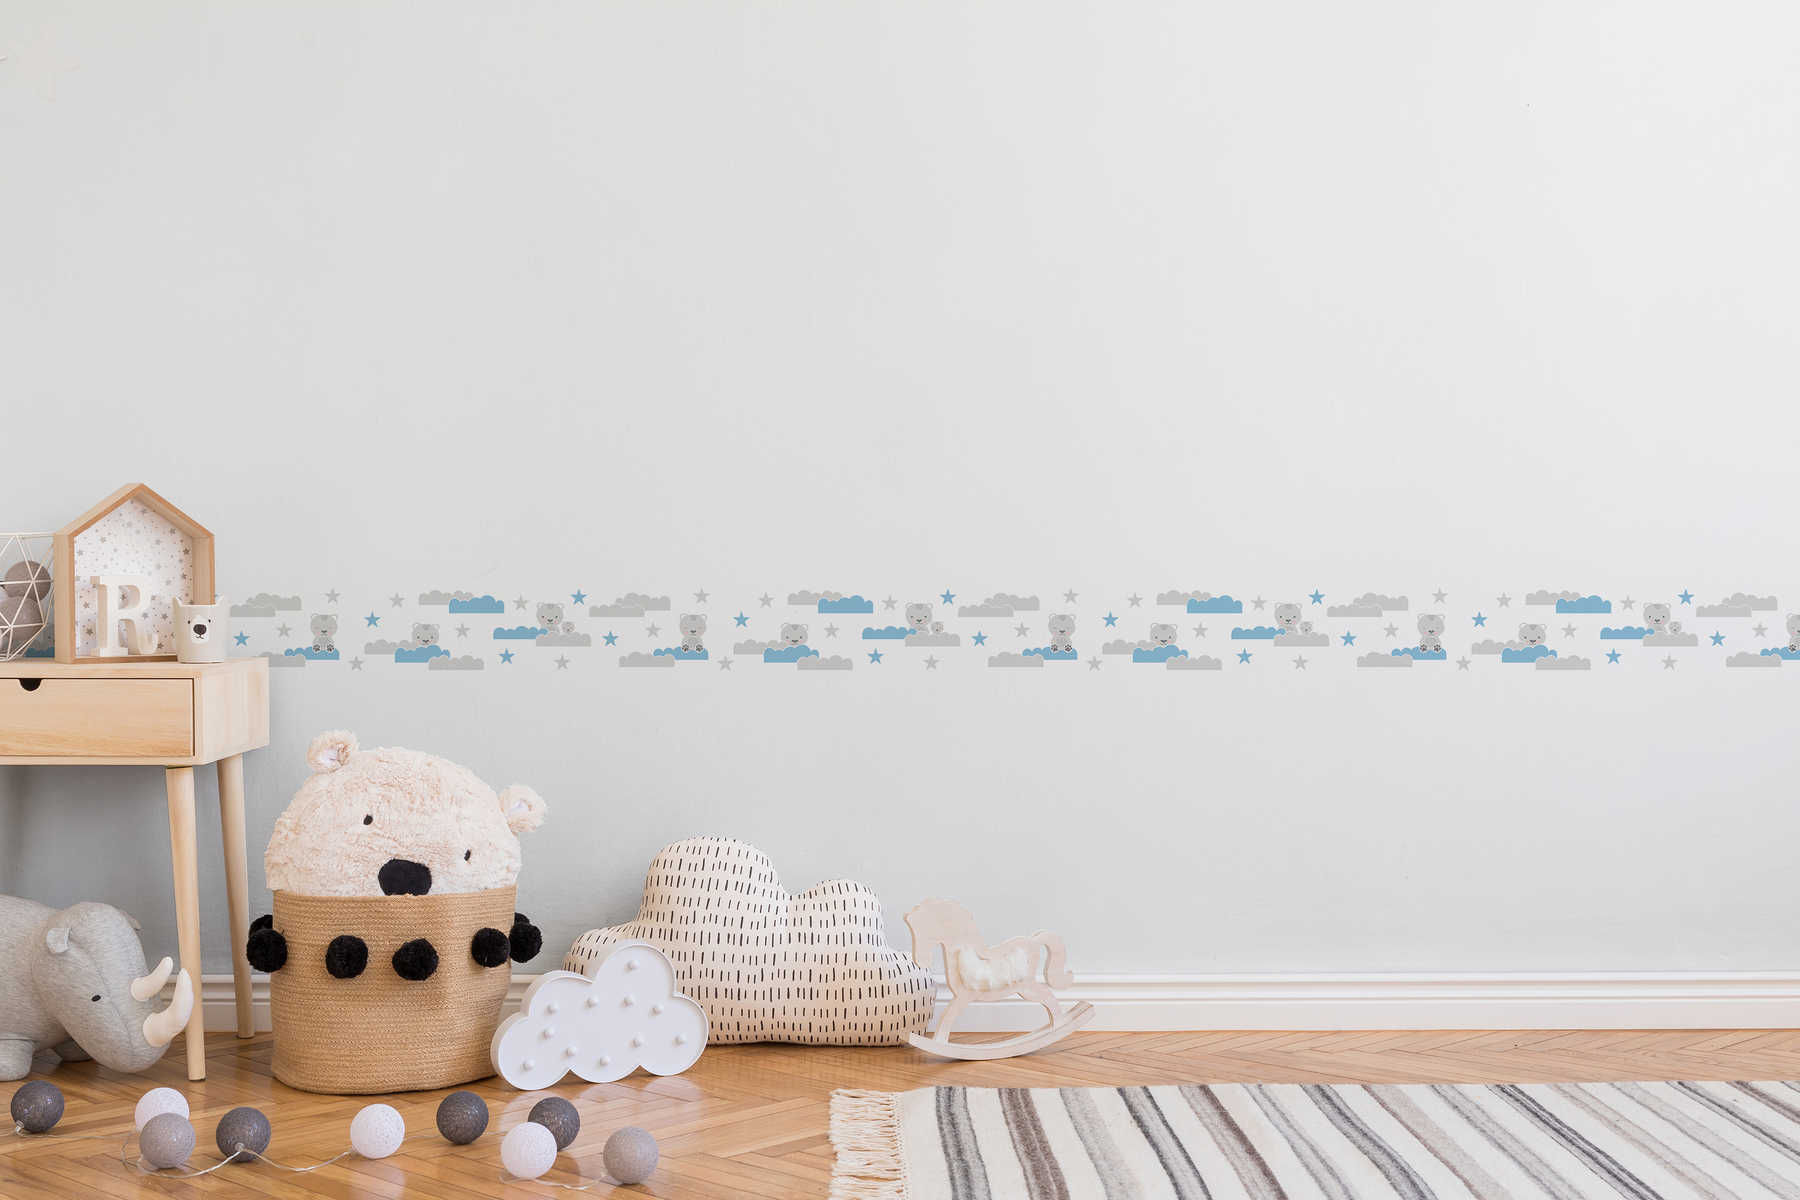             Bordure autocollante pour chambre de bébé garçon "Ciel d'ours" - Gris, bleu, blanc
        